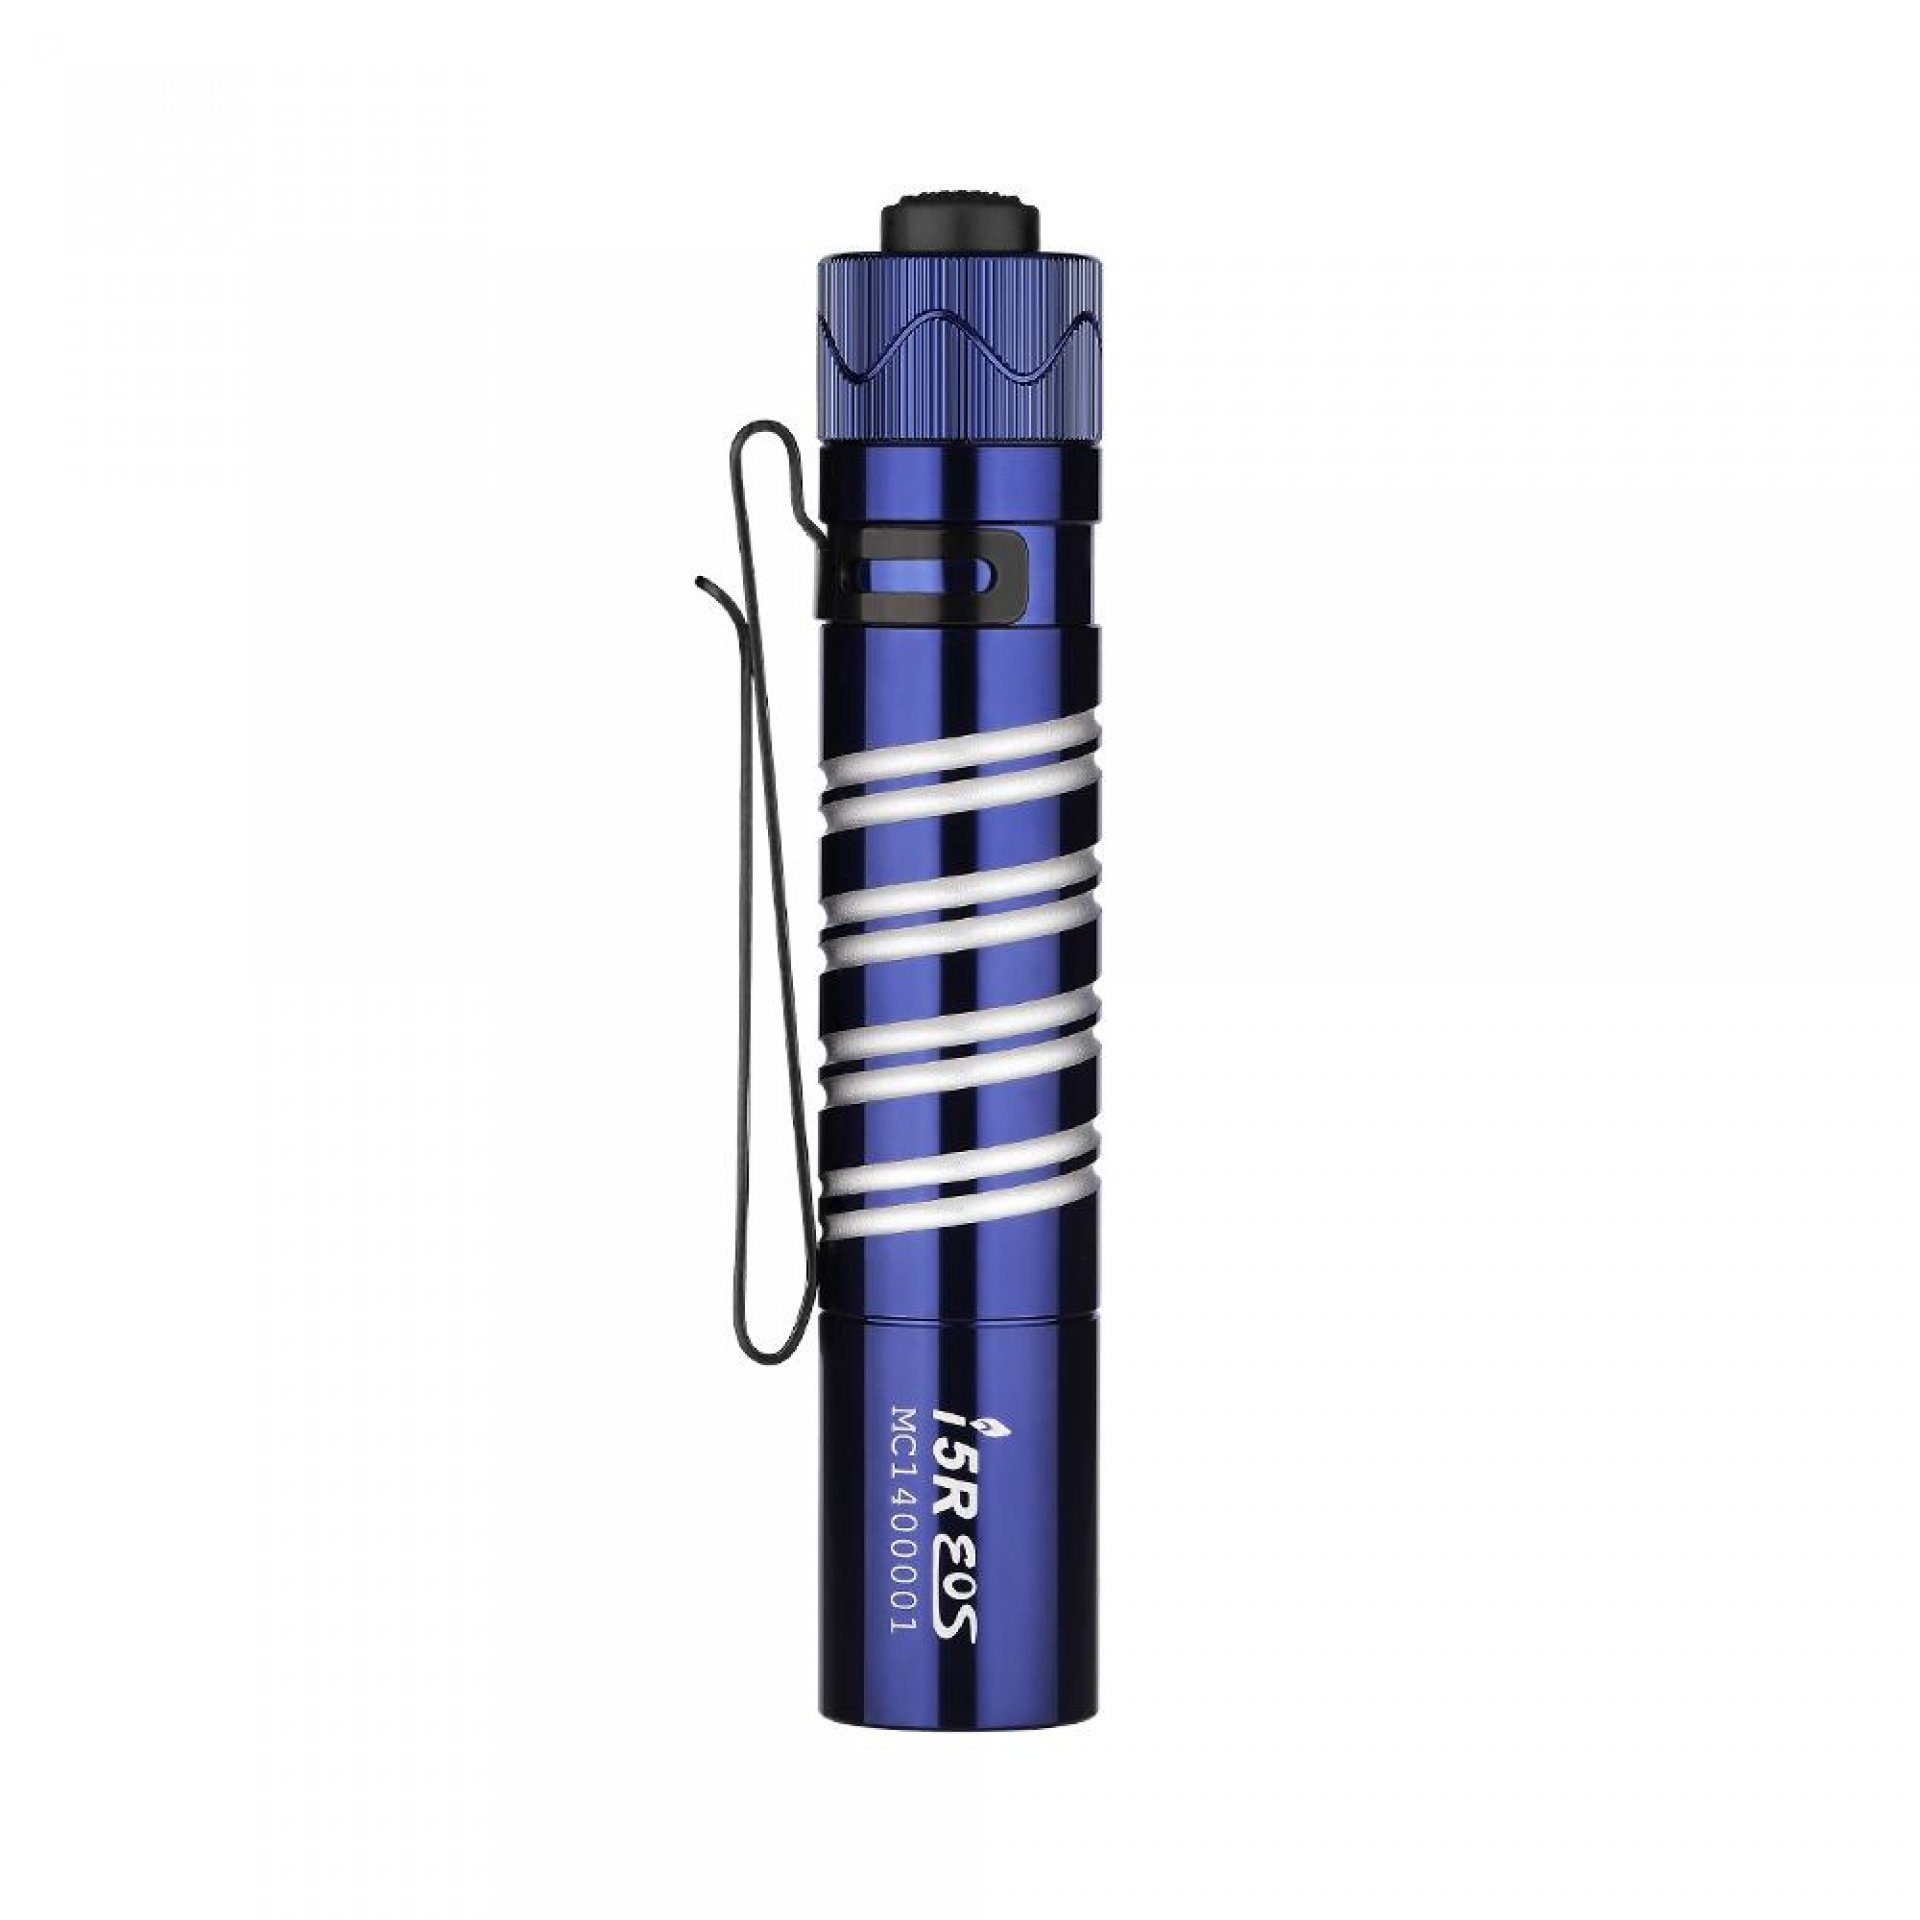 Taschenlampe LED kleine EOS Königblau OLIGHT I5R Taschenlampe OLIGHT kaltweiße